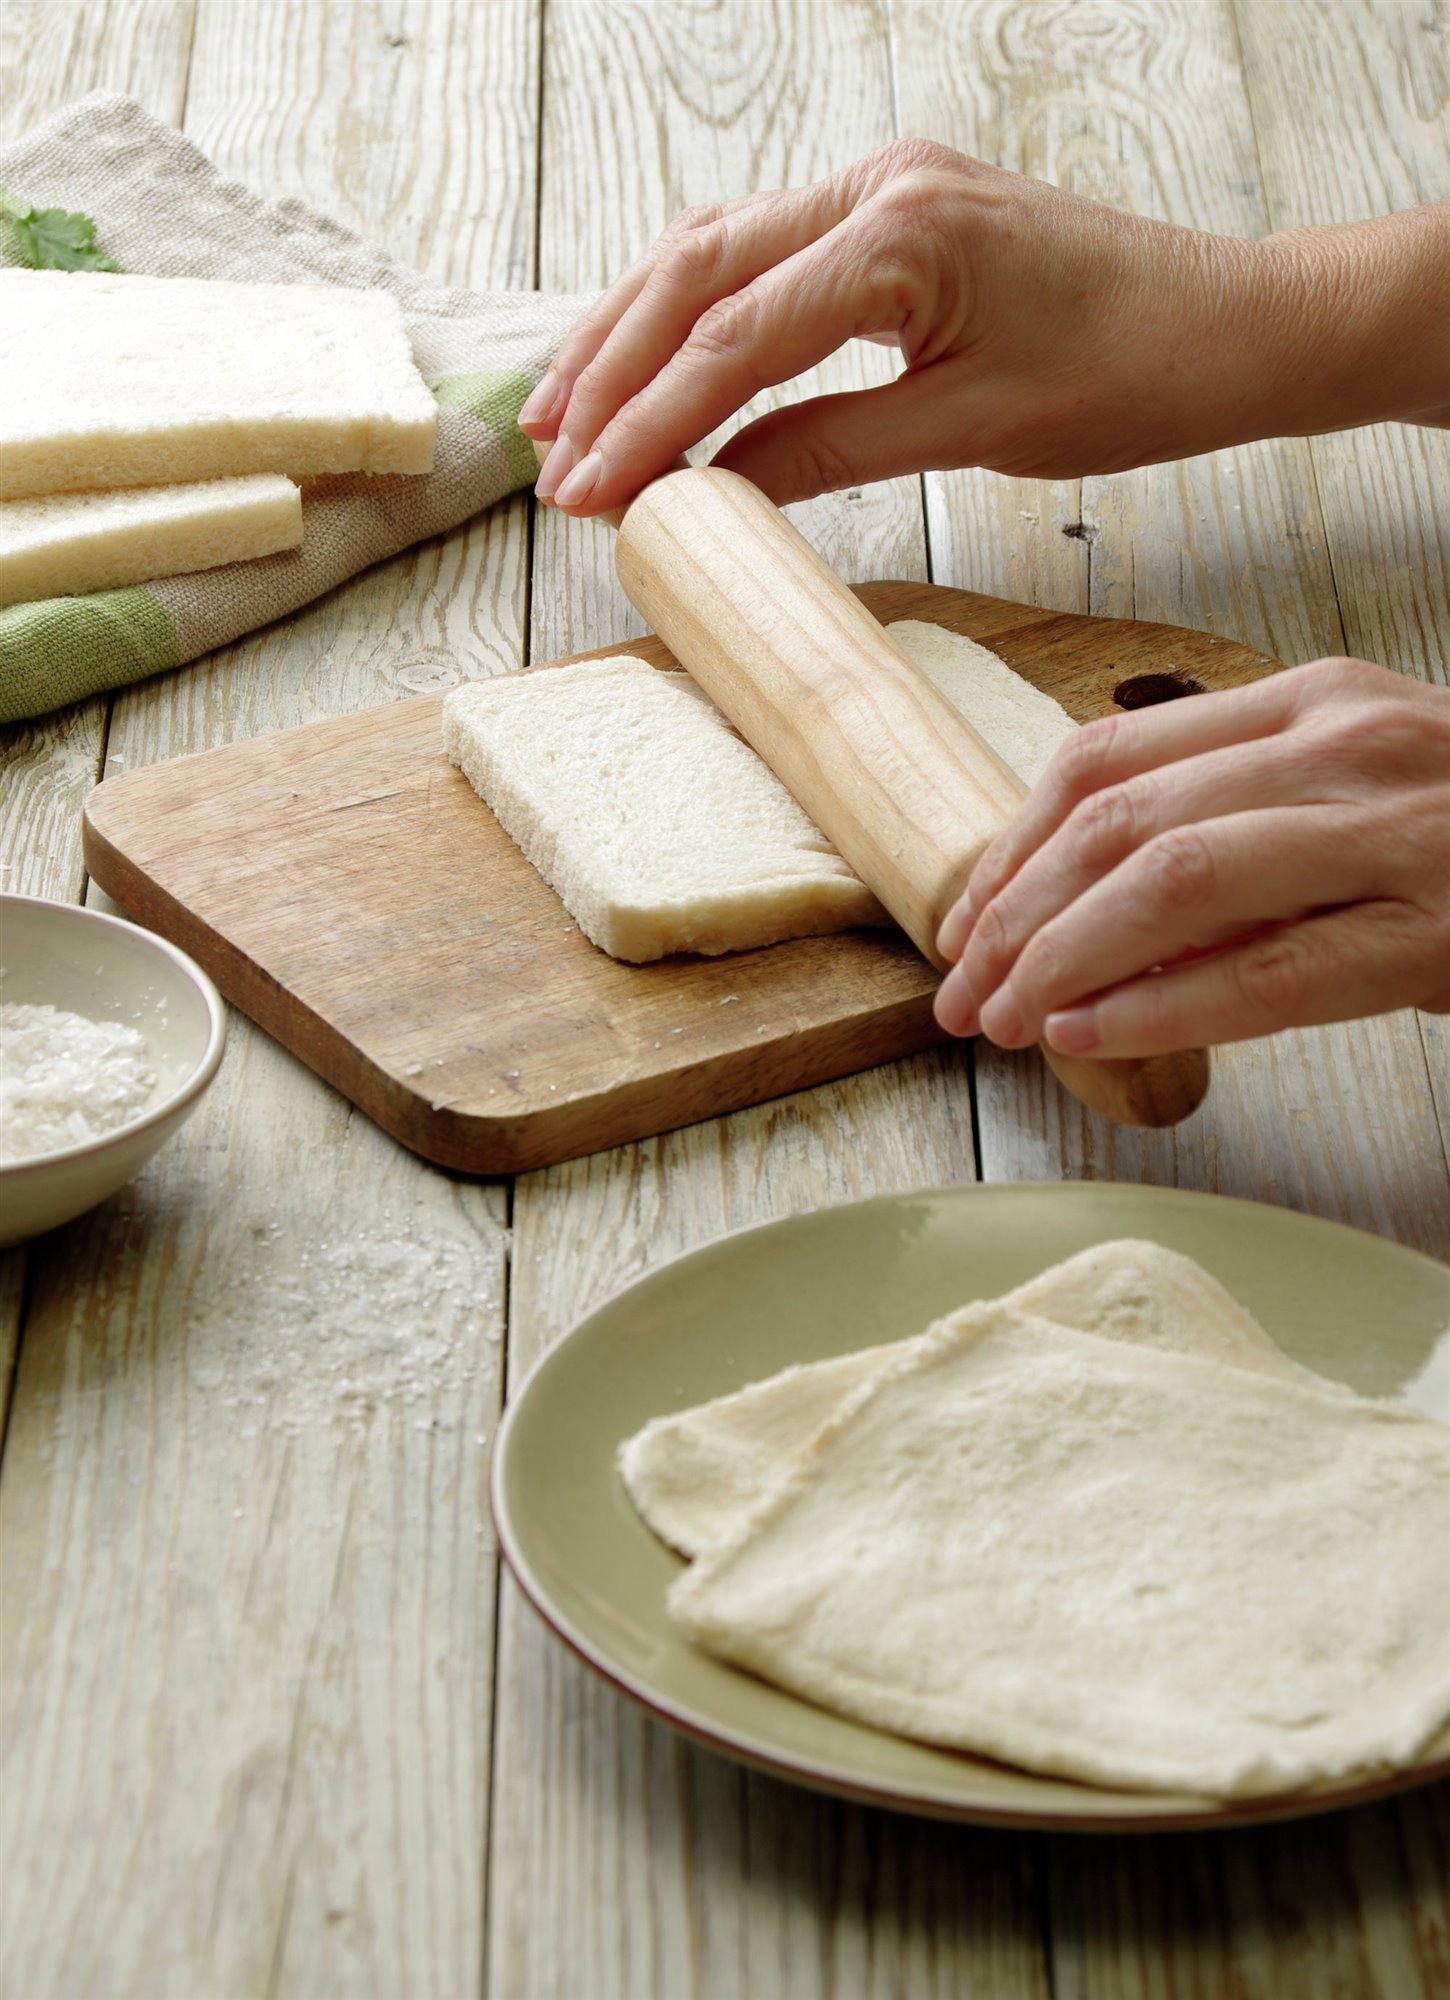 1. Aplana el pan de molde